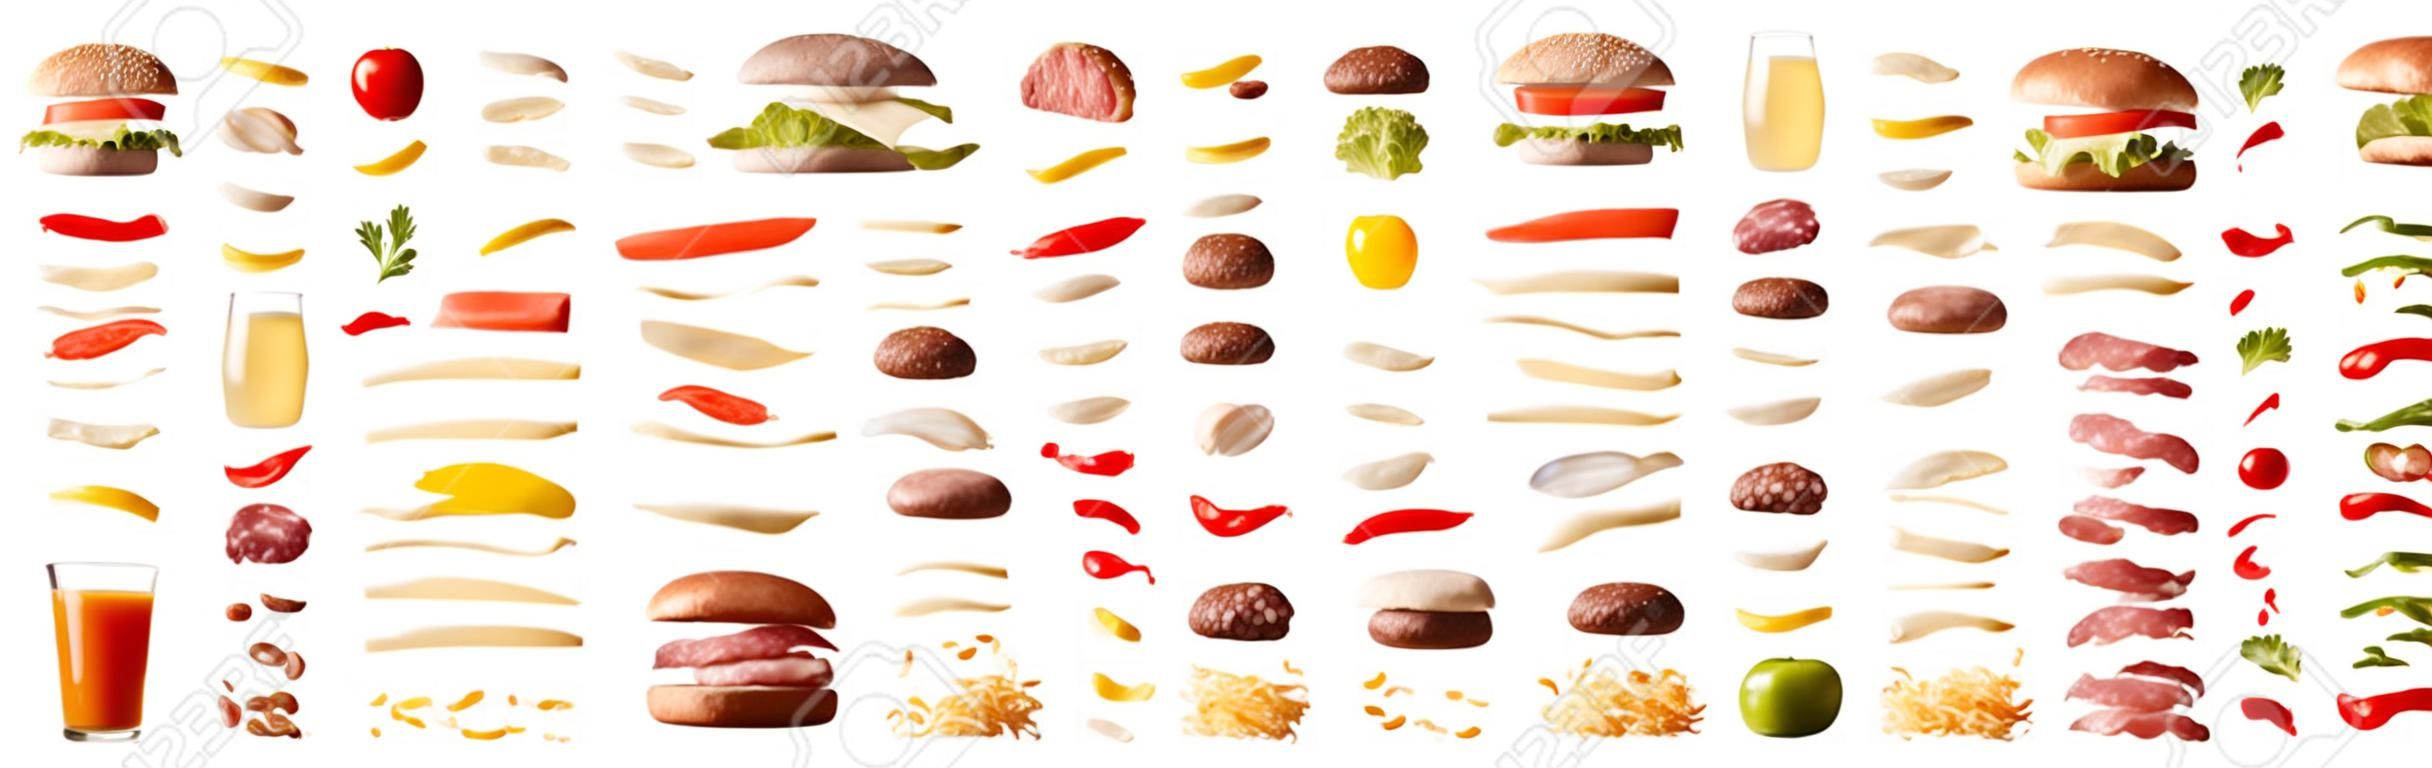 Zestaw różnych hamburgerów ze składnikami oddzielonymi warstwami na białym, izolowanym tle. przedni widok. kompozycja pozioma.